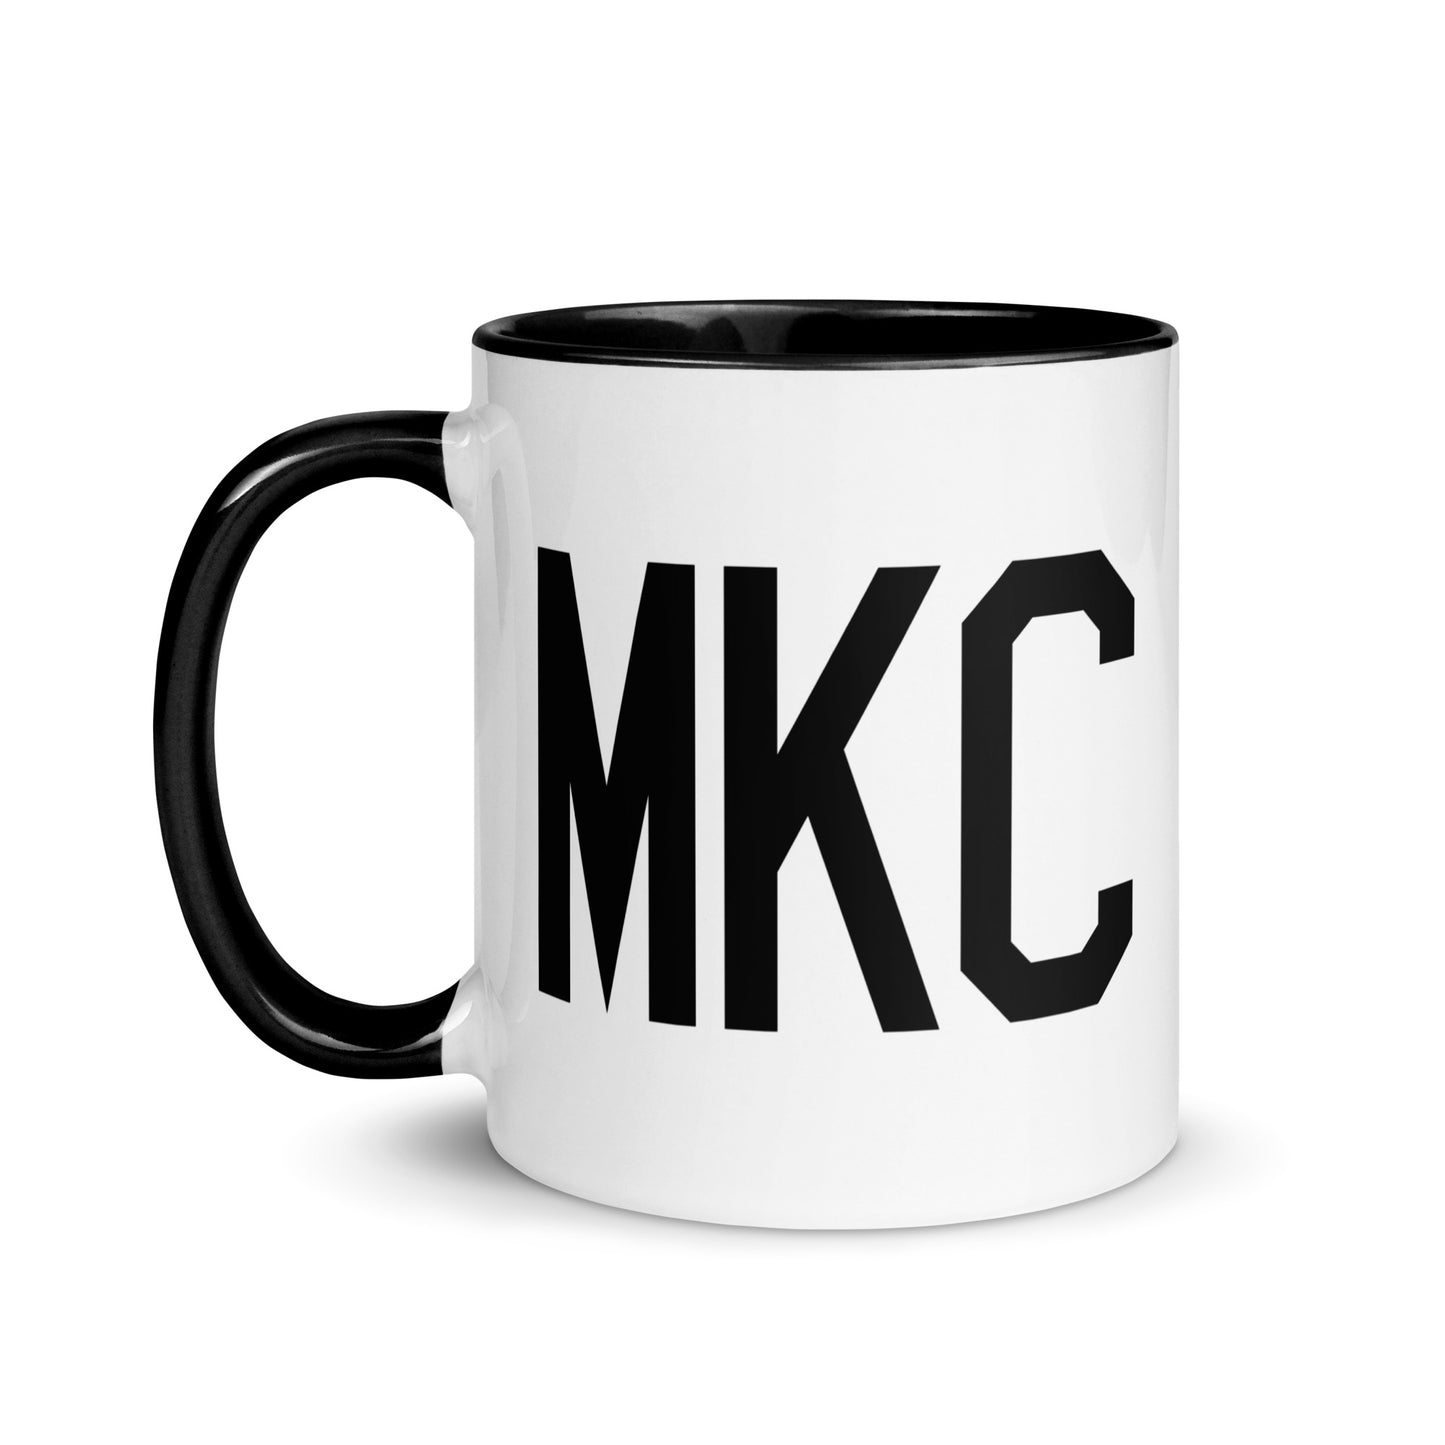 Aviation-Theme Coffee Mug - Black • MKC Kansas City • YHM Designs - Image 03